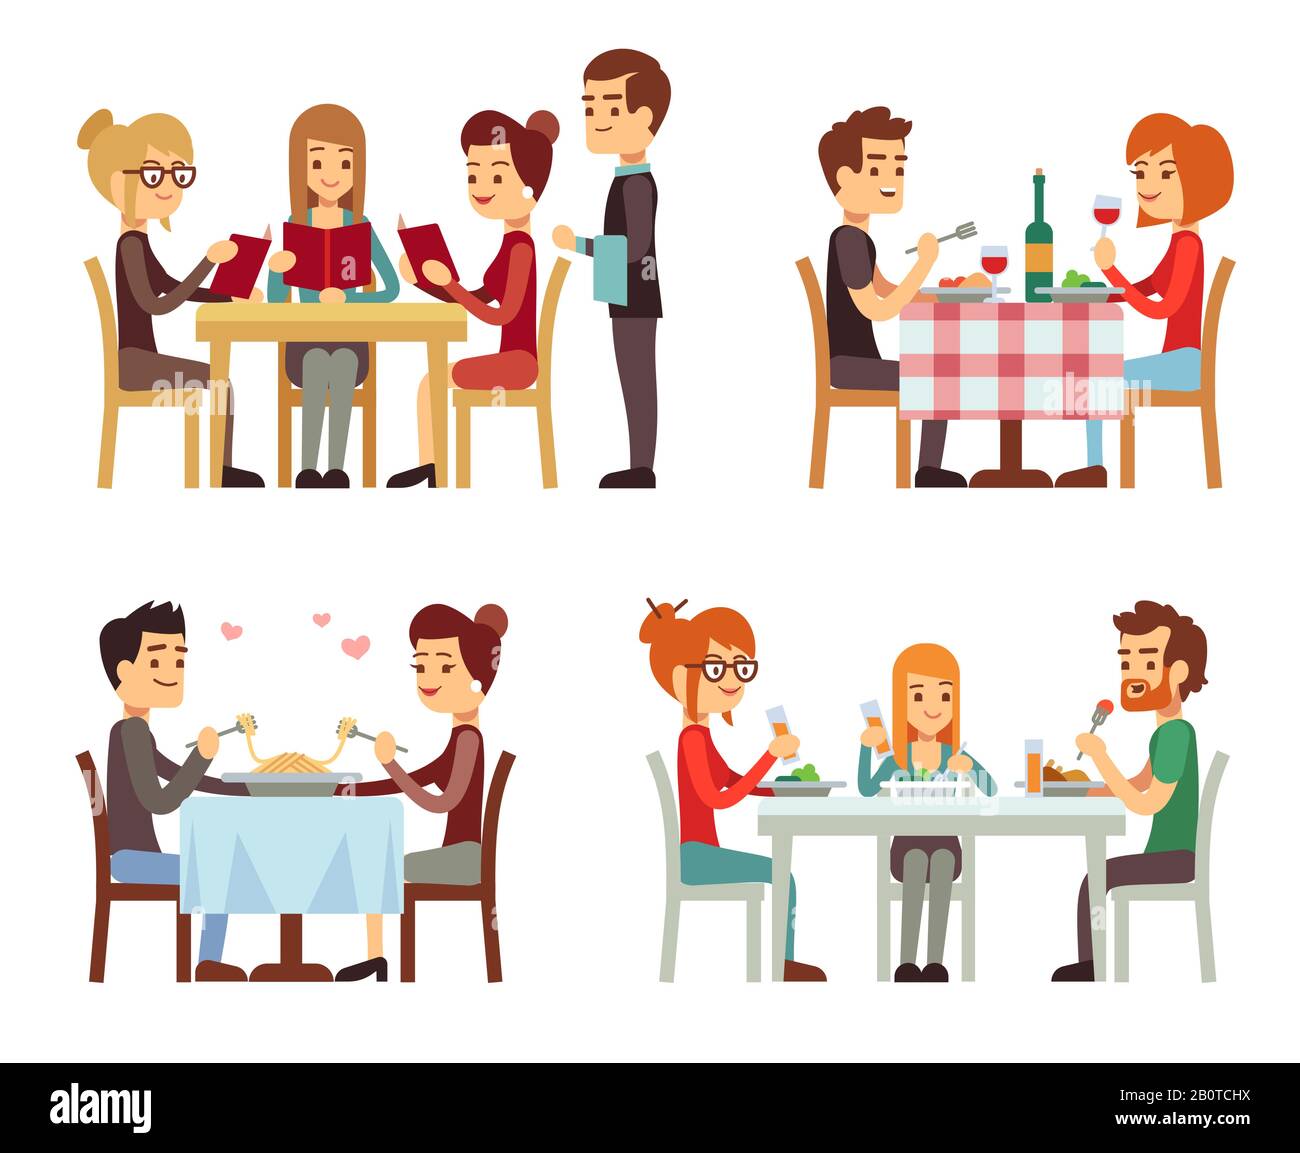 Menschen im Restaurant essen Abendessen Vector Flat Concepts. Familie im Restaurant, Illustration des romantischen Datums im Restaurant Stock Vektor